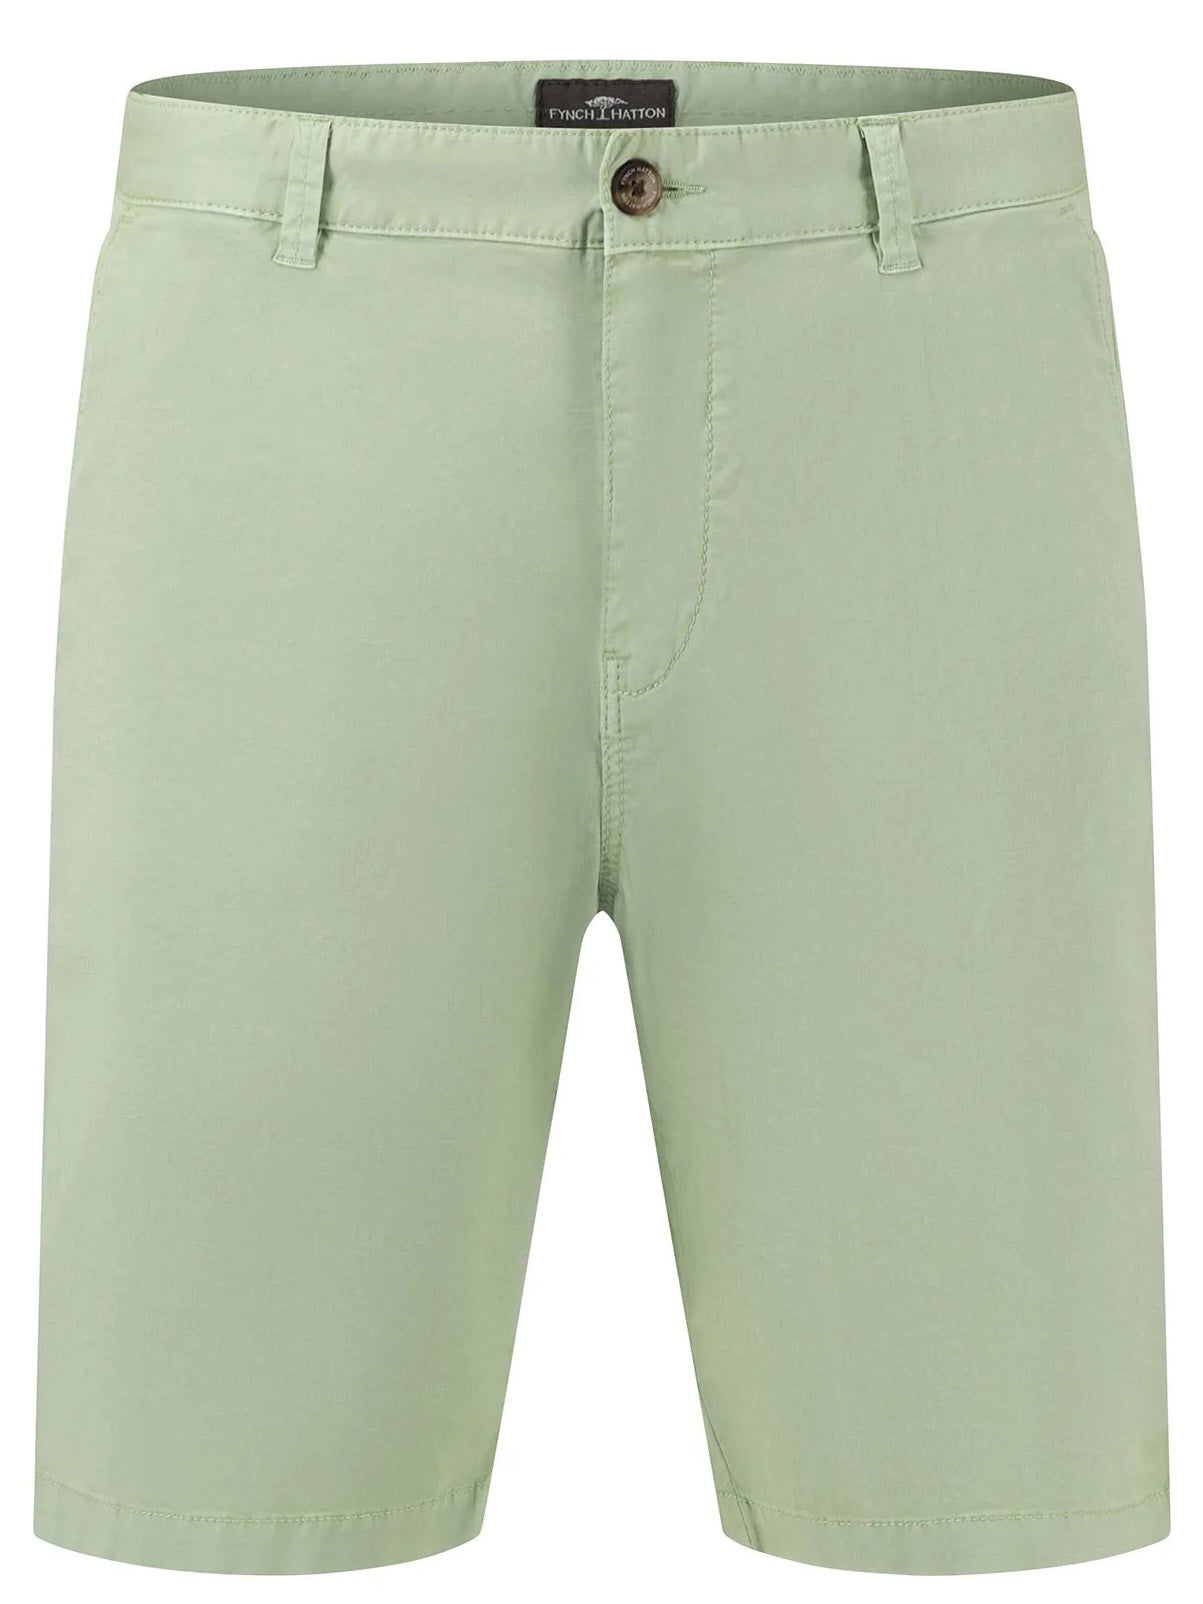 FYNCH HATTON Bermuda Shorts - Men's Stretch Cotton – Soft Green